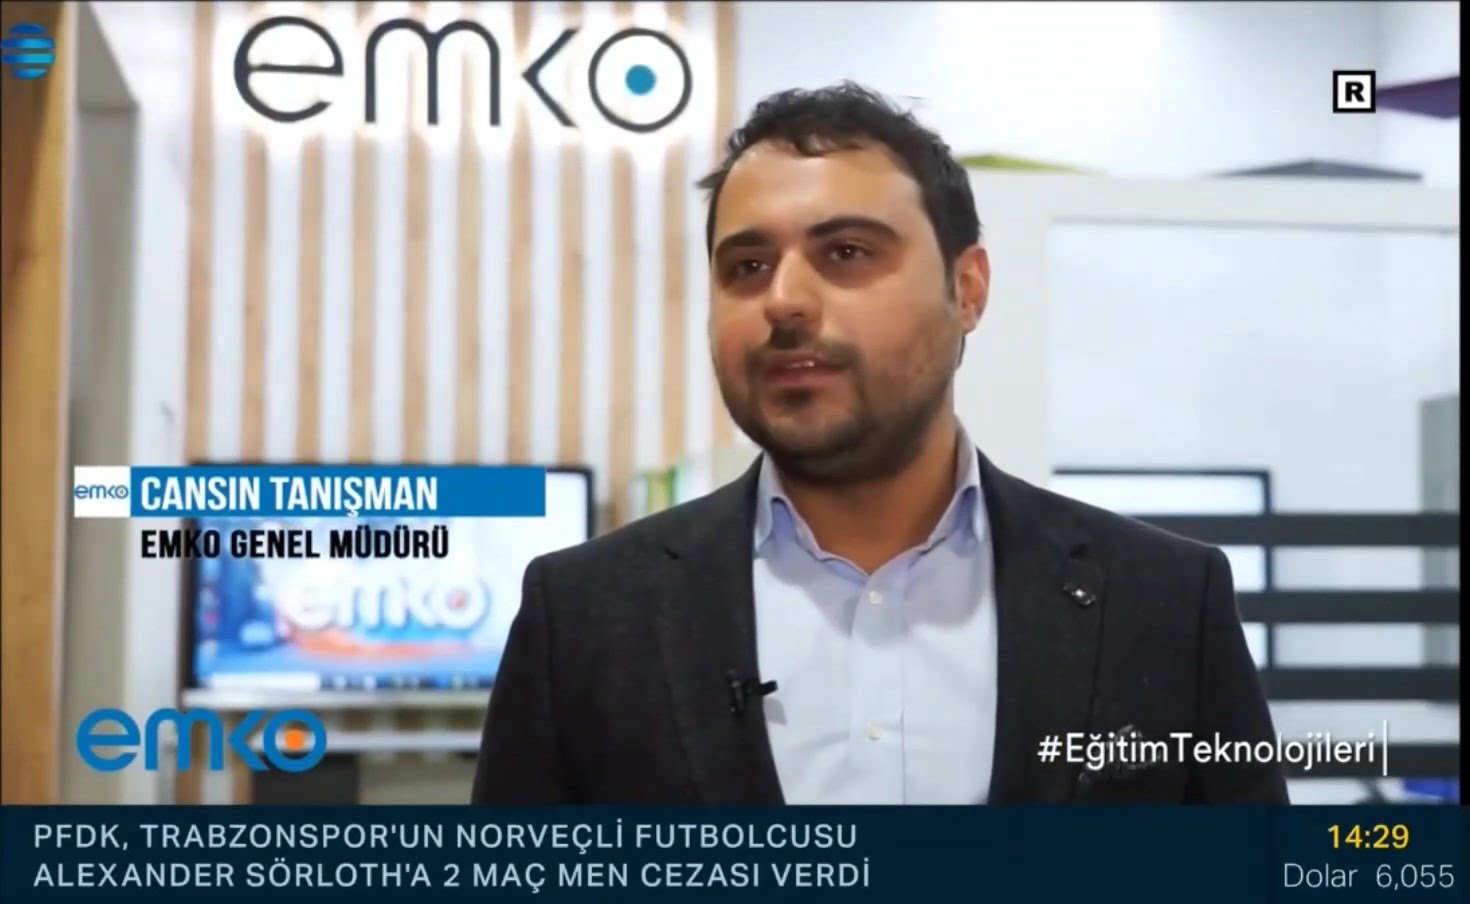 [Basında Emko] NTV Reel Sektör Emko Eğitim Teknolojileri Reklamı